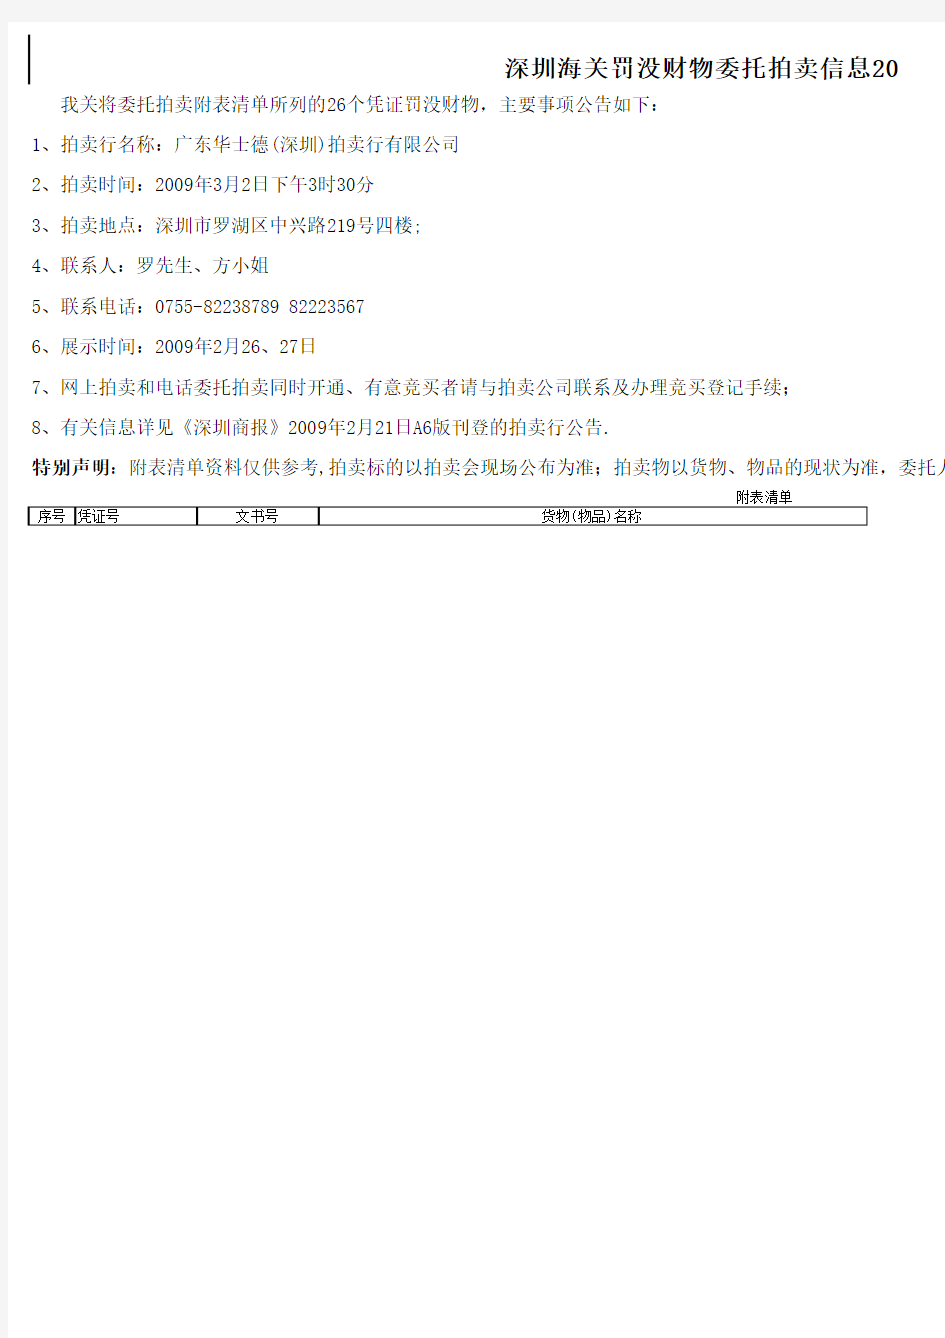 深圳海关罚没财物委托拍卖信息2009第12号